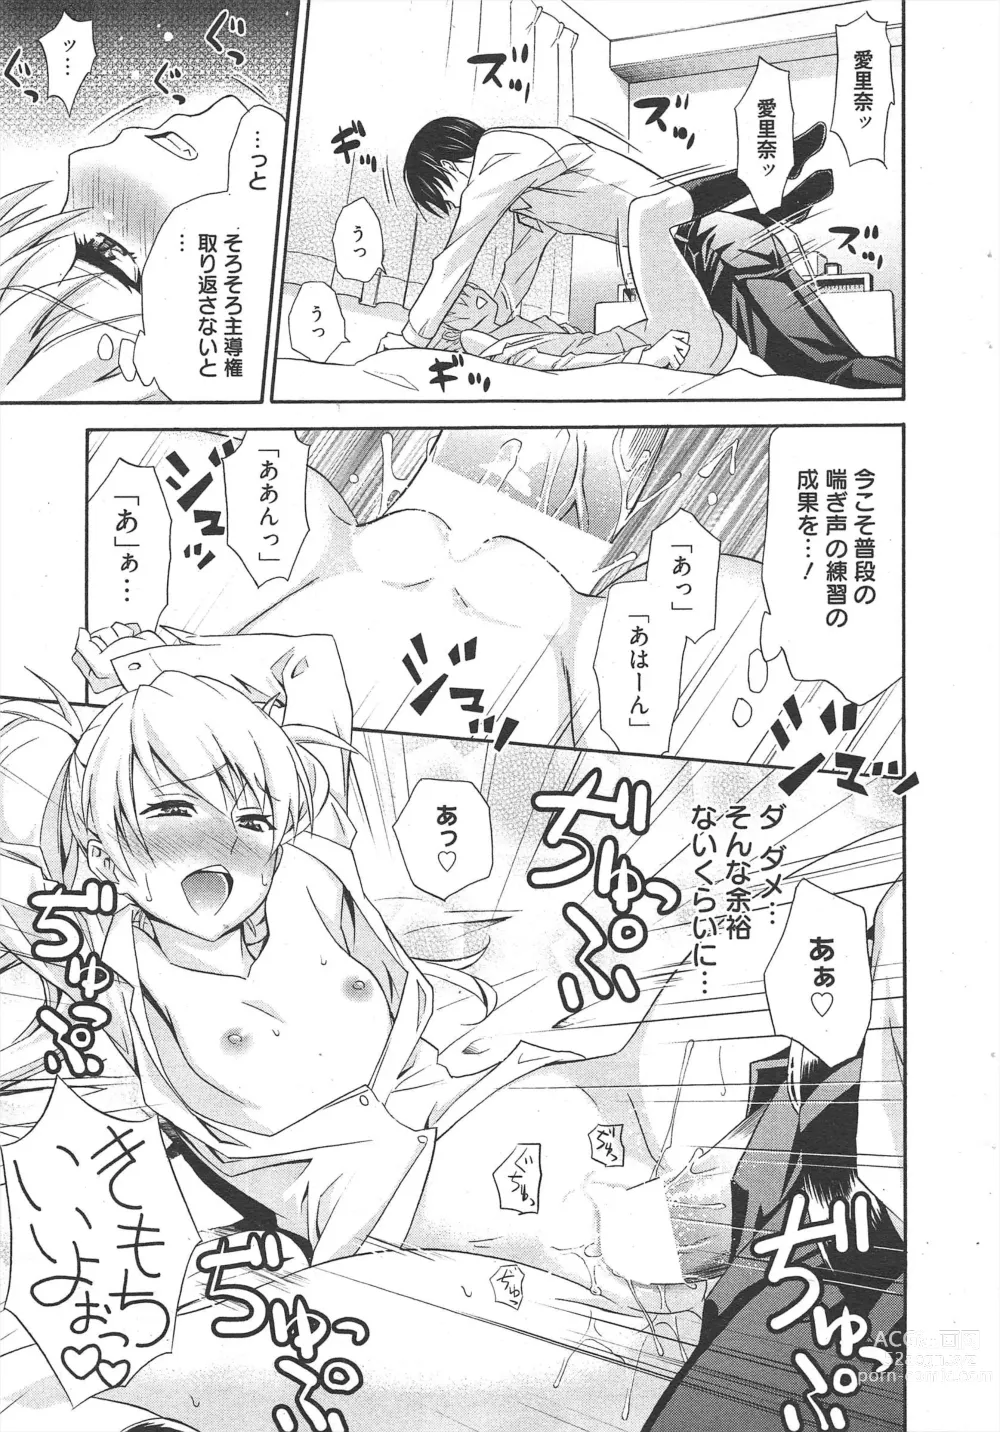 Page 17 of manga Manga Bangaichi 2012-07